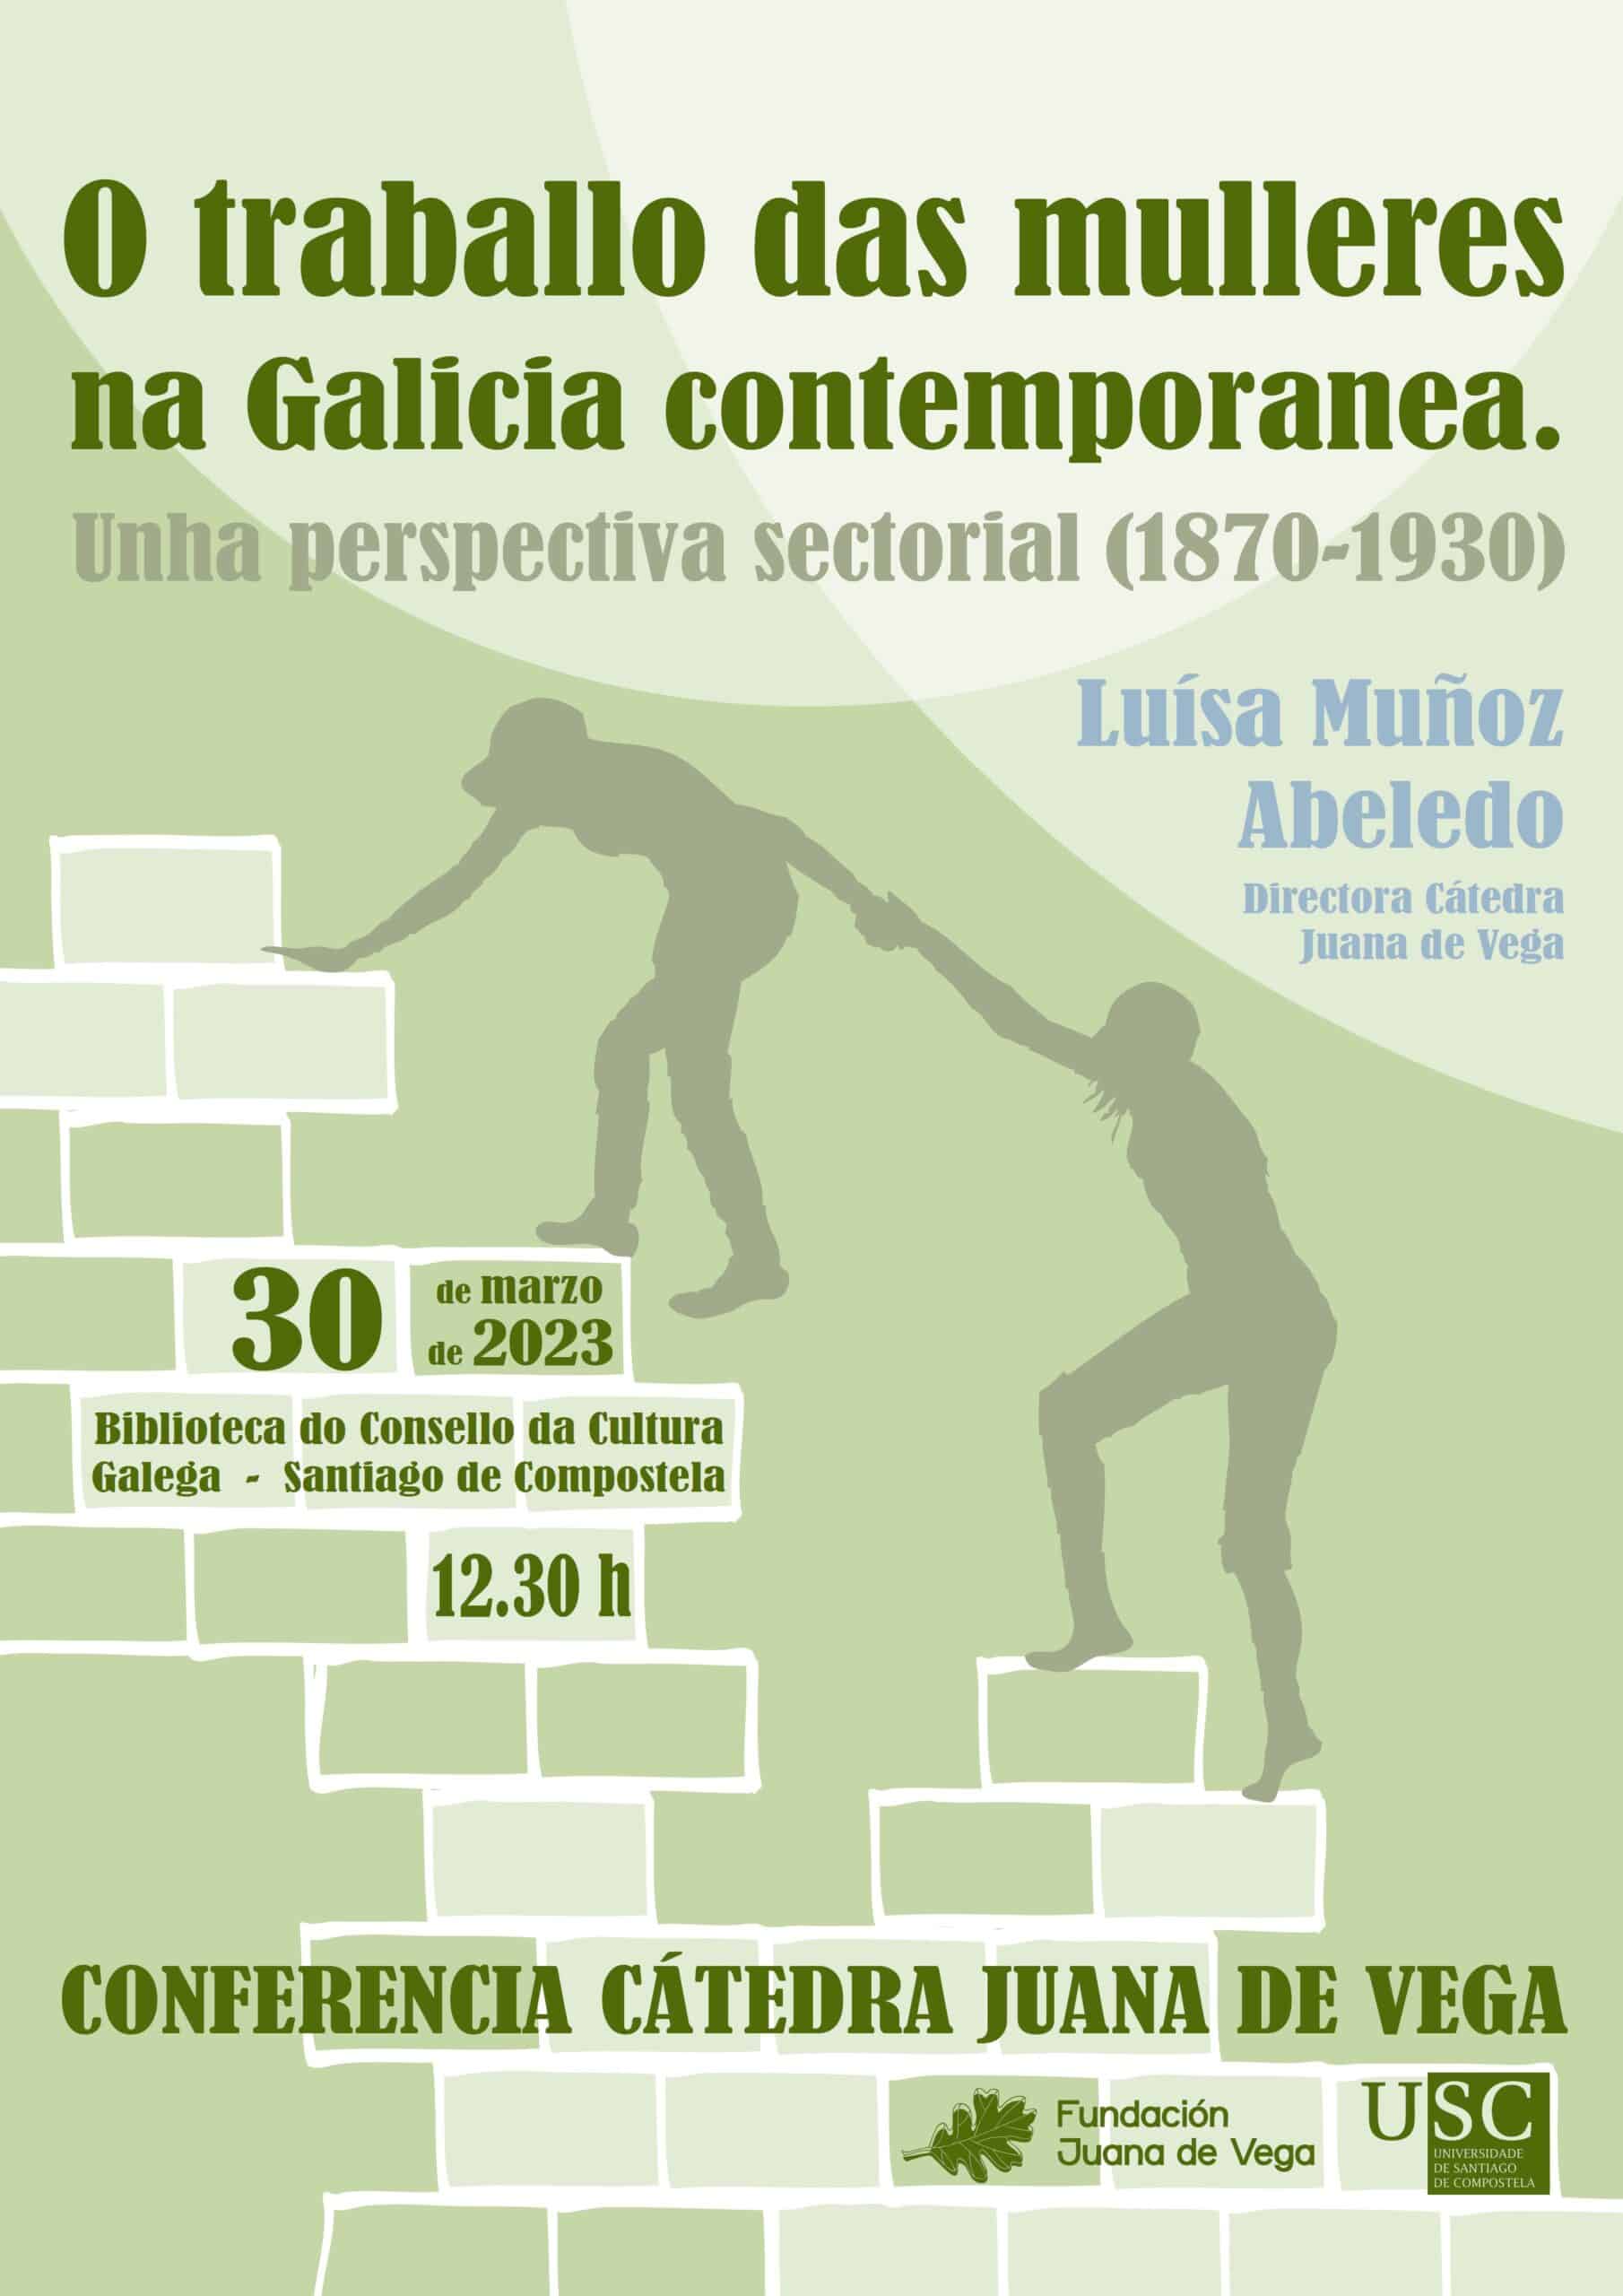 Conferencia da Cátedra Juana de Vega "O traballo das mulleres na Galicia contemporánea. Unha perspectiva sectorial (1870-1930)".